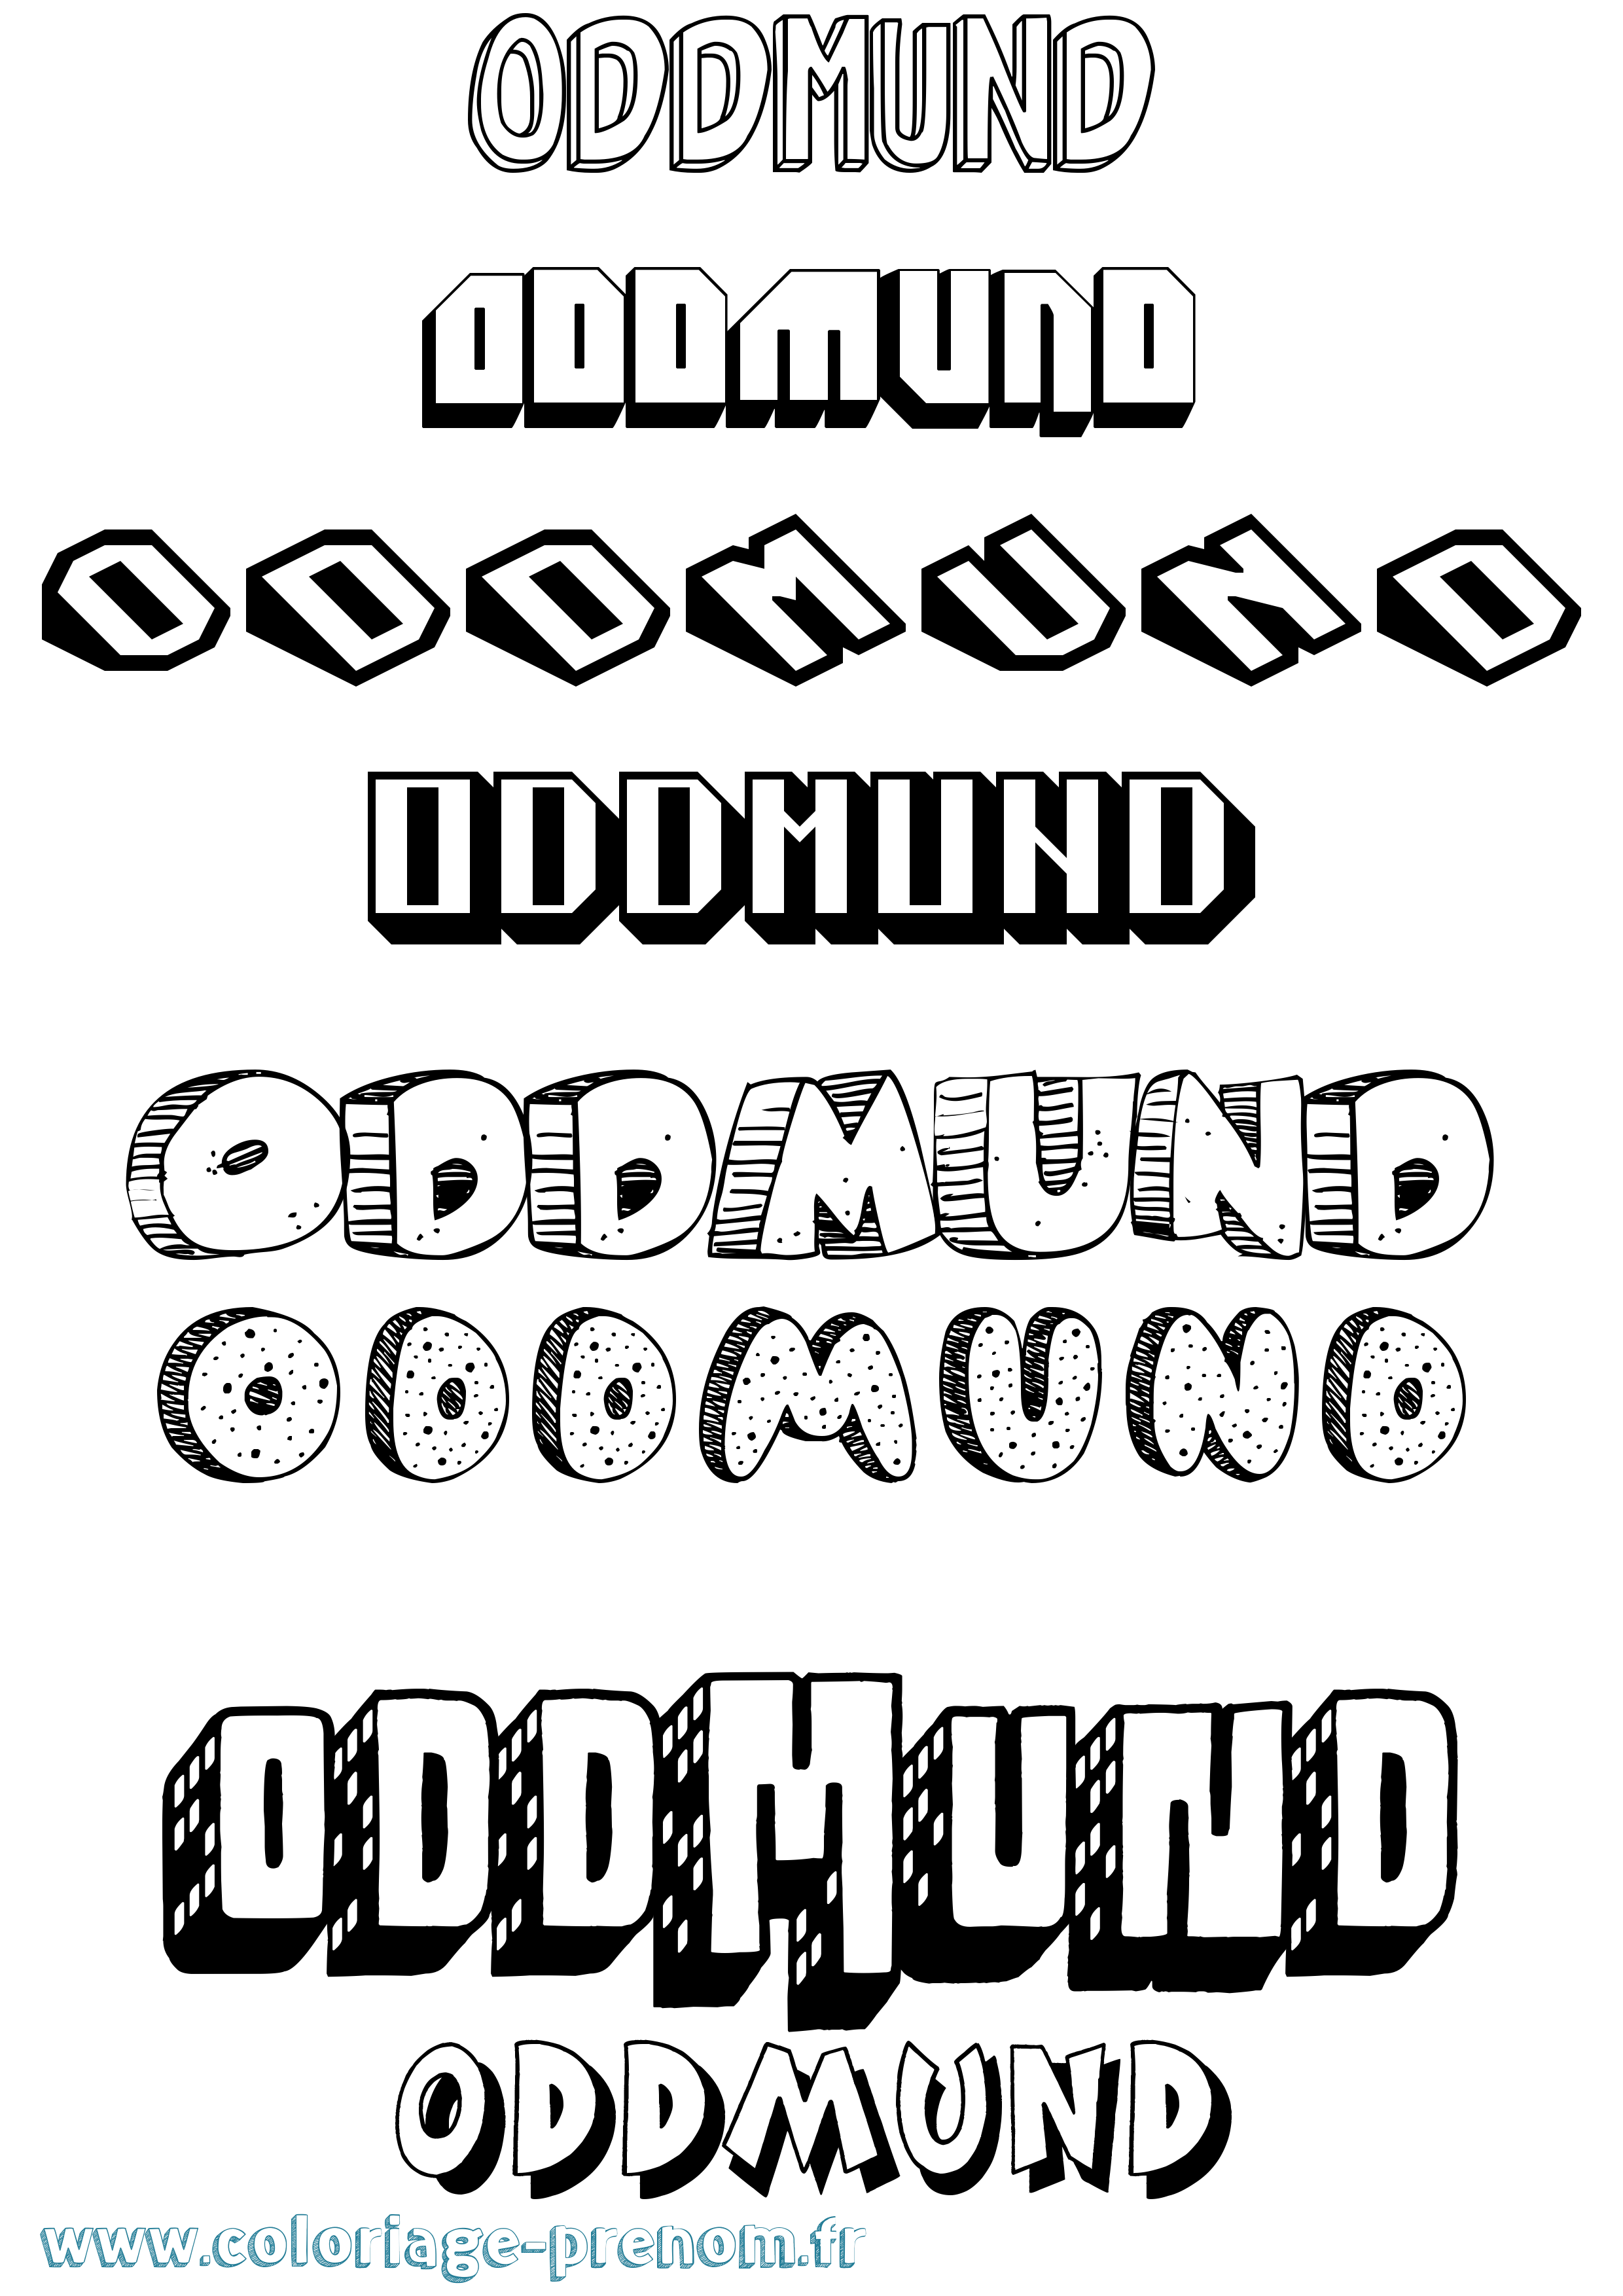 Coloriage prénom Oddmund Effet 3D